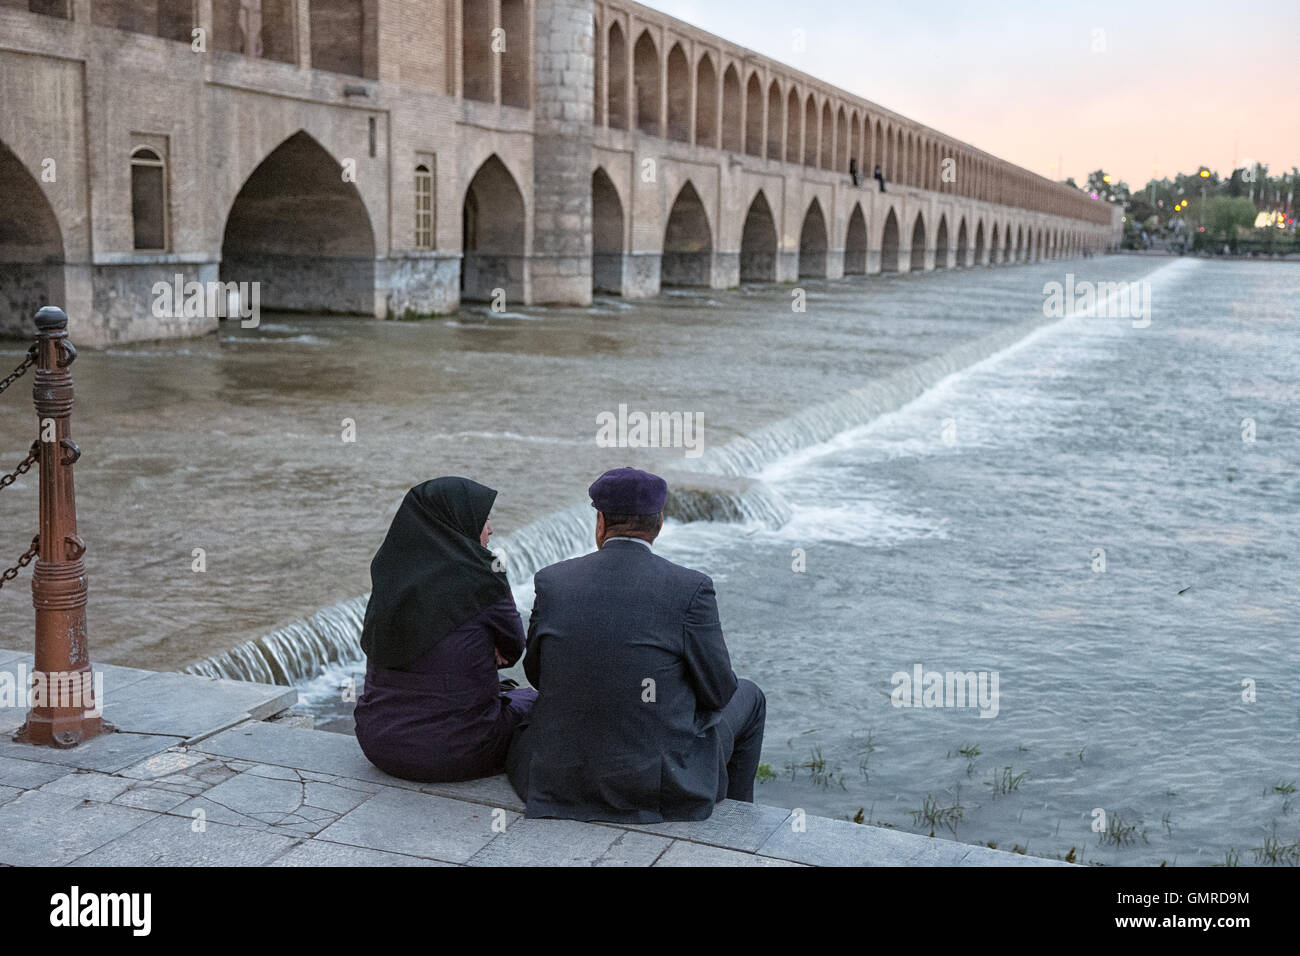 Couple iranien assis sur les rives de la rivière Zayandeh. Allāhverdi Khan populairement connu sous le nom de pont Si-O-seh pol "Le pont de trente-trois travées" est l'un des 11 ponts d'Isfahan, Iran et le plus long pont sur la rivière Zayandeh avec la longueur totale de 297,76 mètres (976,9 pieds). Il est hautement classé comme étant l'un des exemples les plus célèbres de la conception de ponts safavides. Banque D'Images